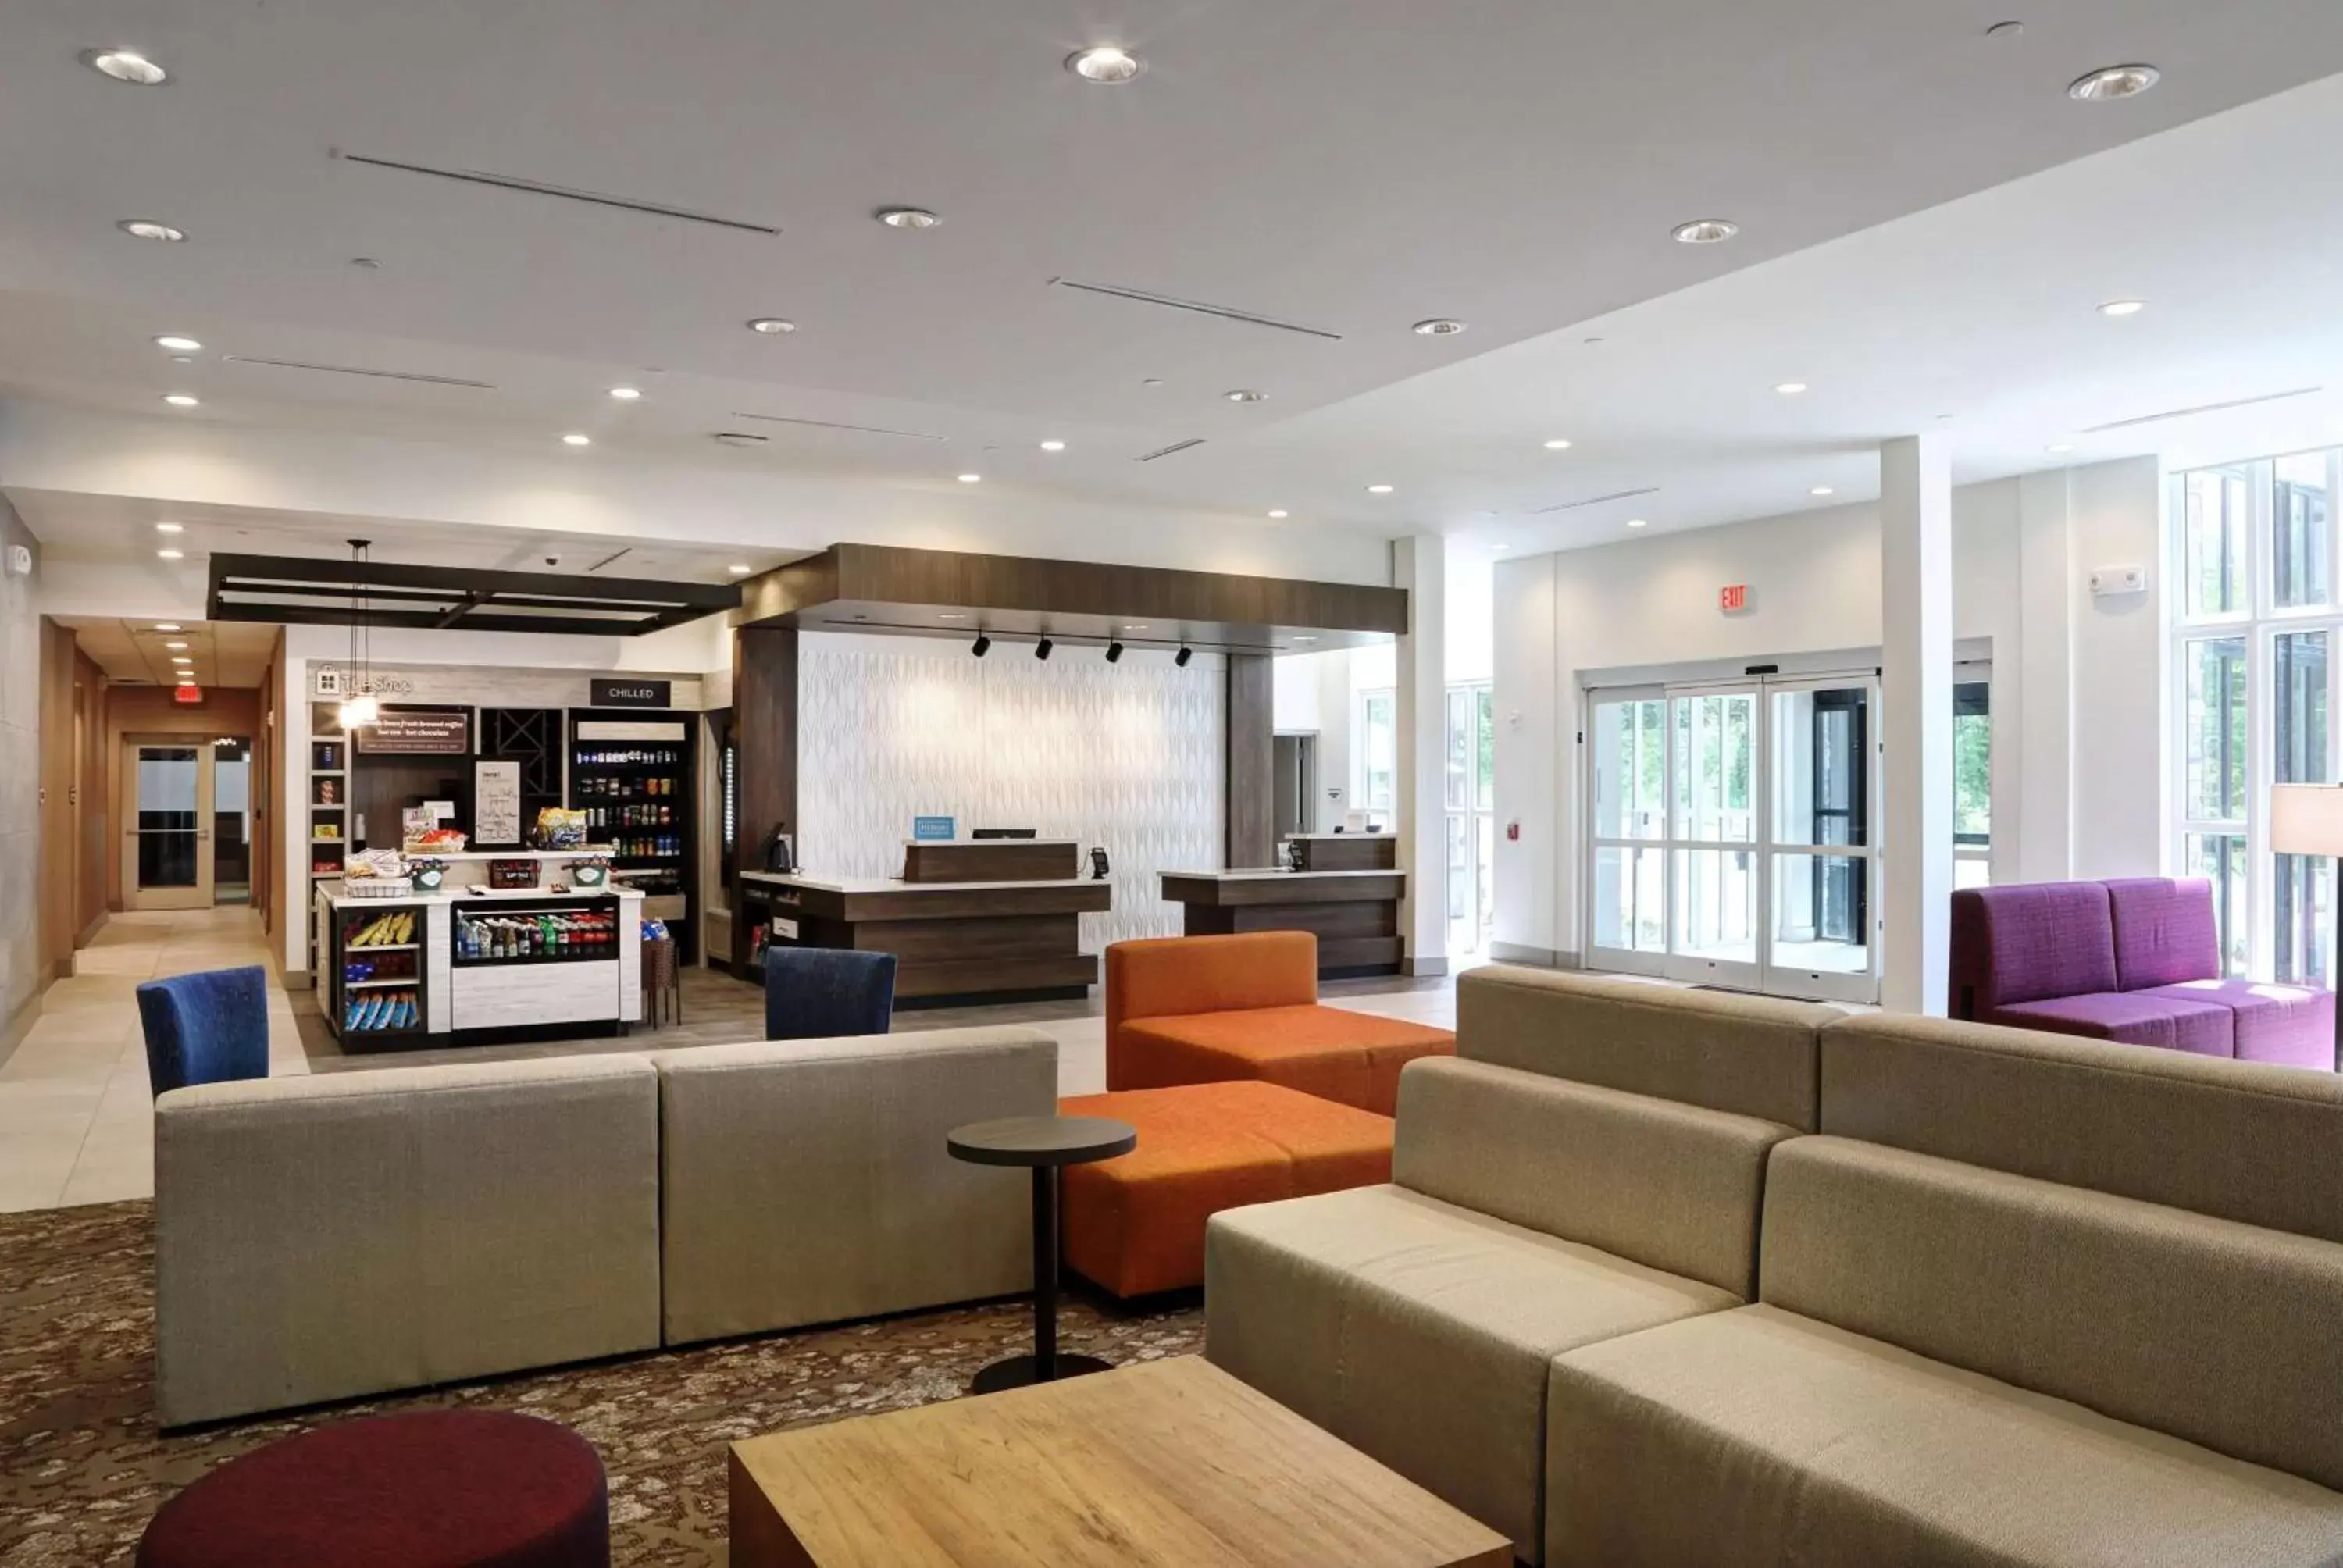 Lobby or reception, Lobby/Reception in Hilton Garden Inn Bel Air, Md